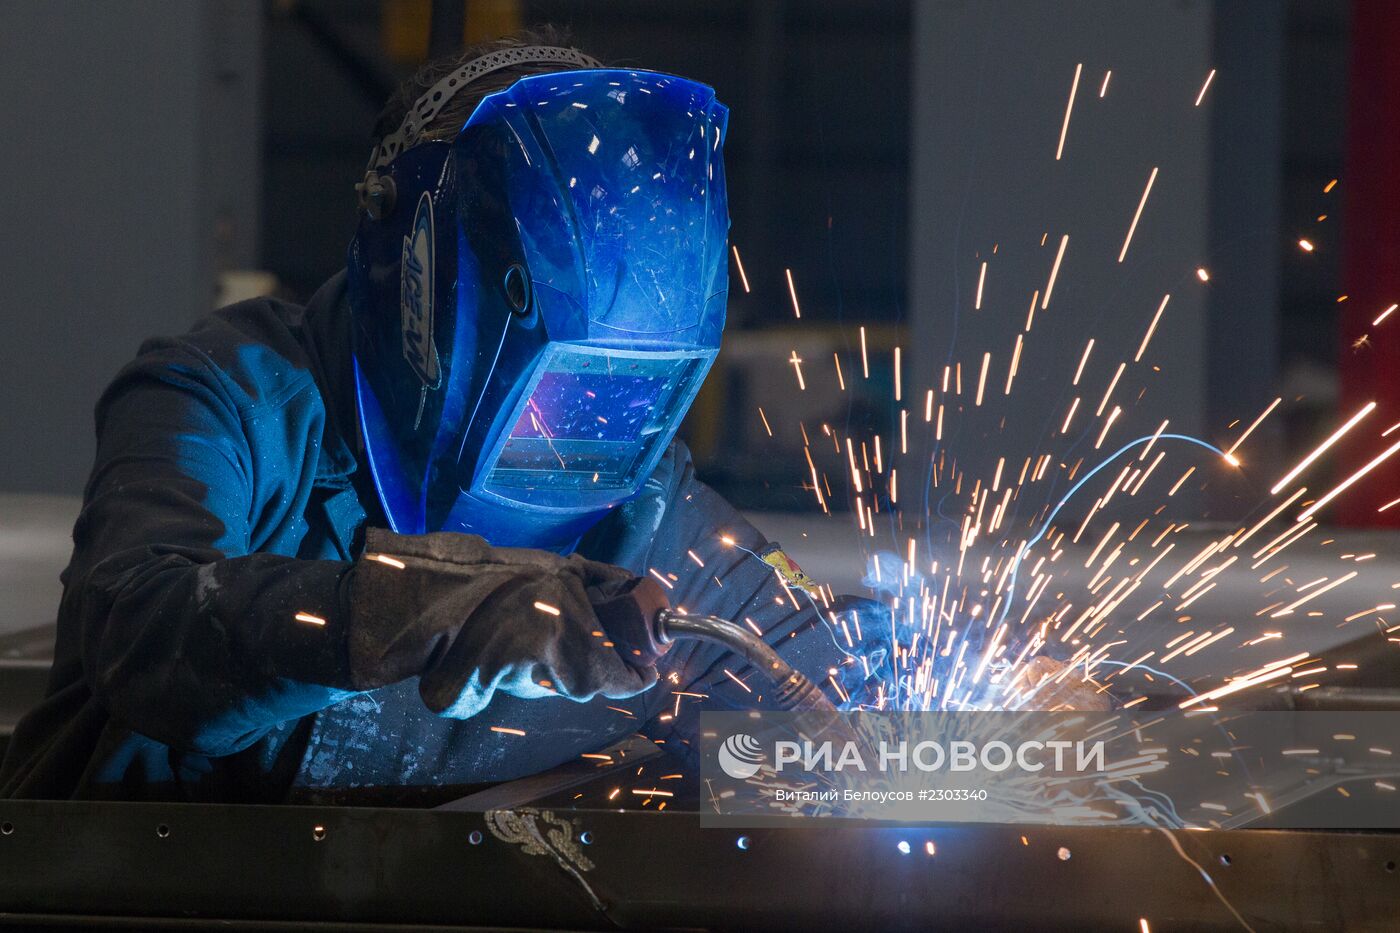 Работа Демиховского машиностроительного завода